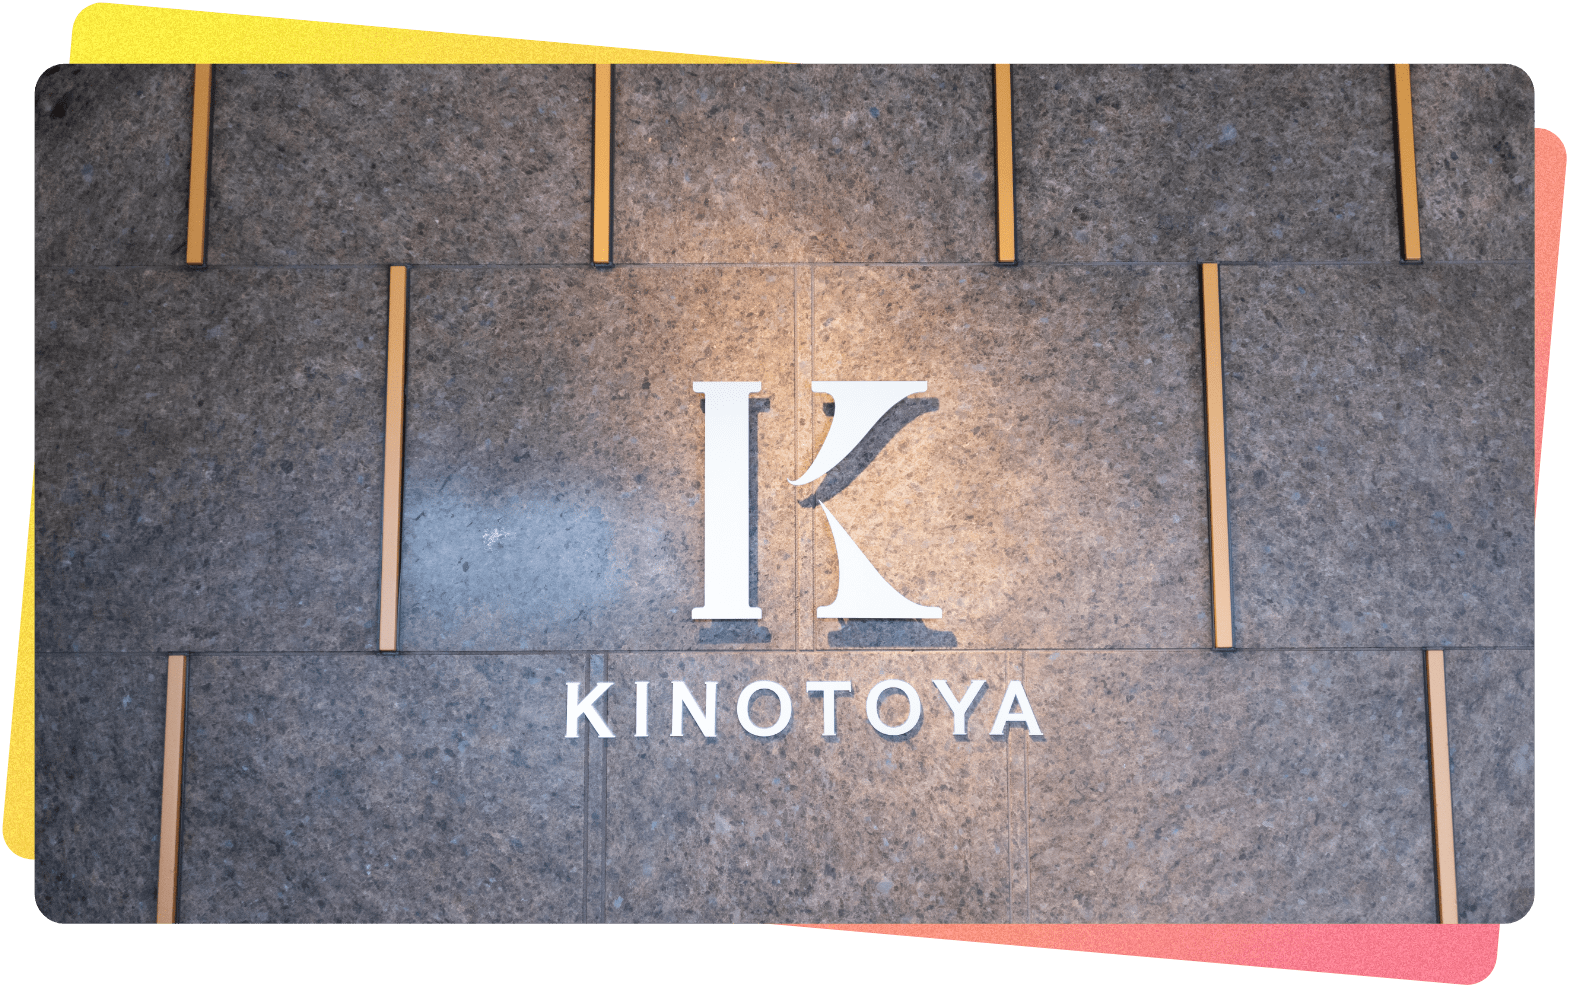 About KINOTOYA(きのとやについて)